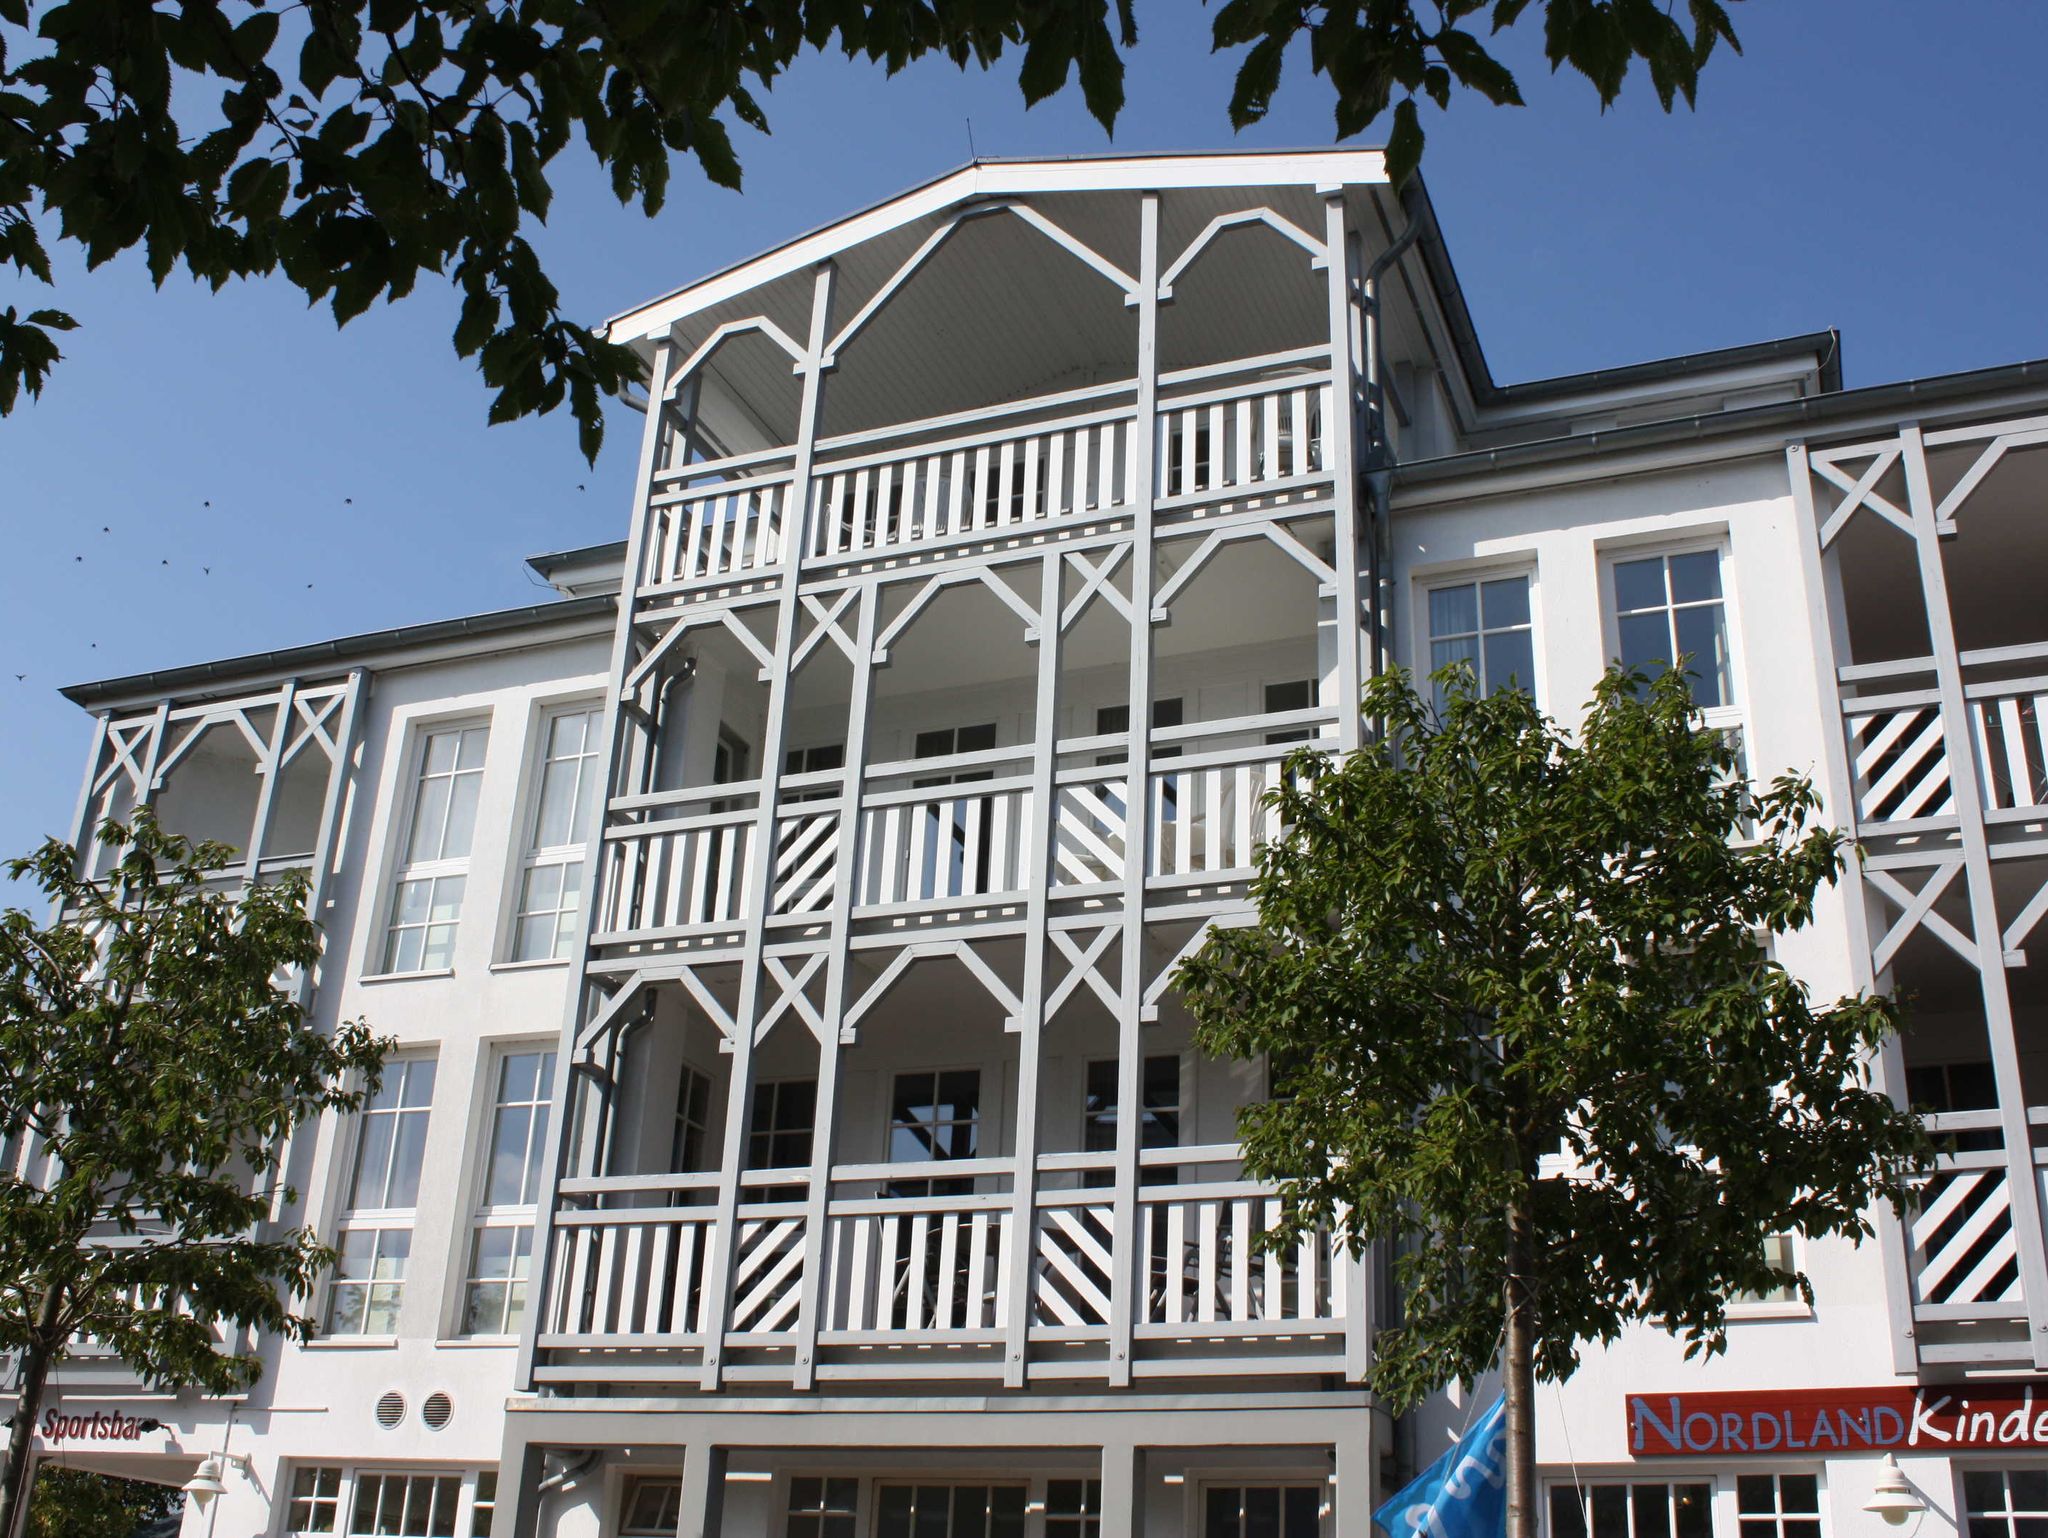 Gemütliches Ferienhaus - Ostsee Strand 500m - Check24 - booking - ökologisch - rauchfrei - strandnah - tolle Bewertung